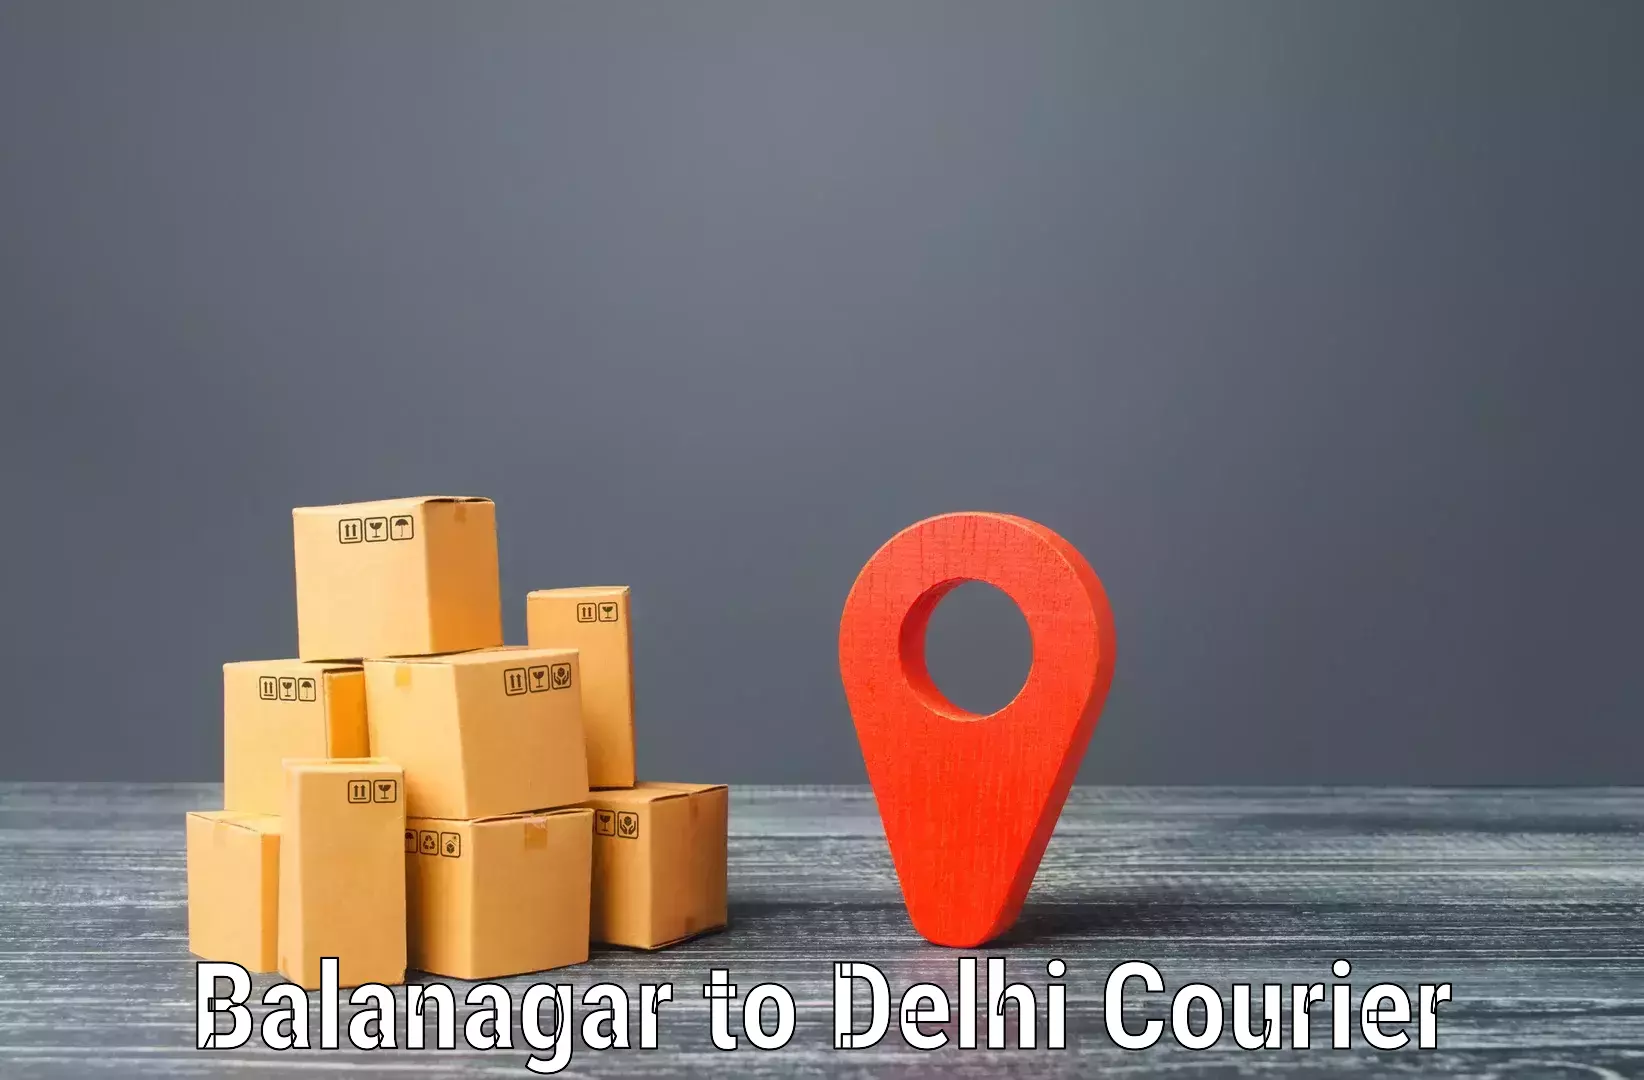 Tech-enabled shipping in Balanagar to Sarojini Nagar